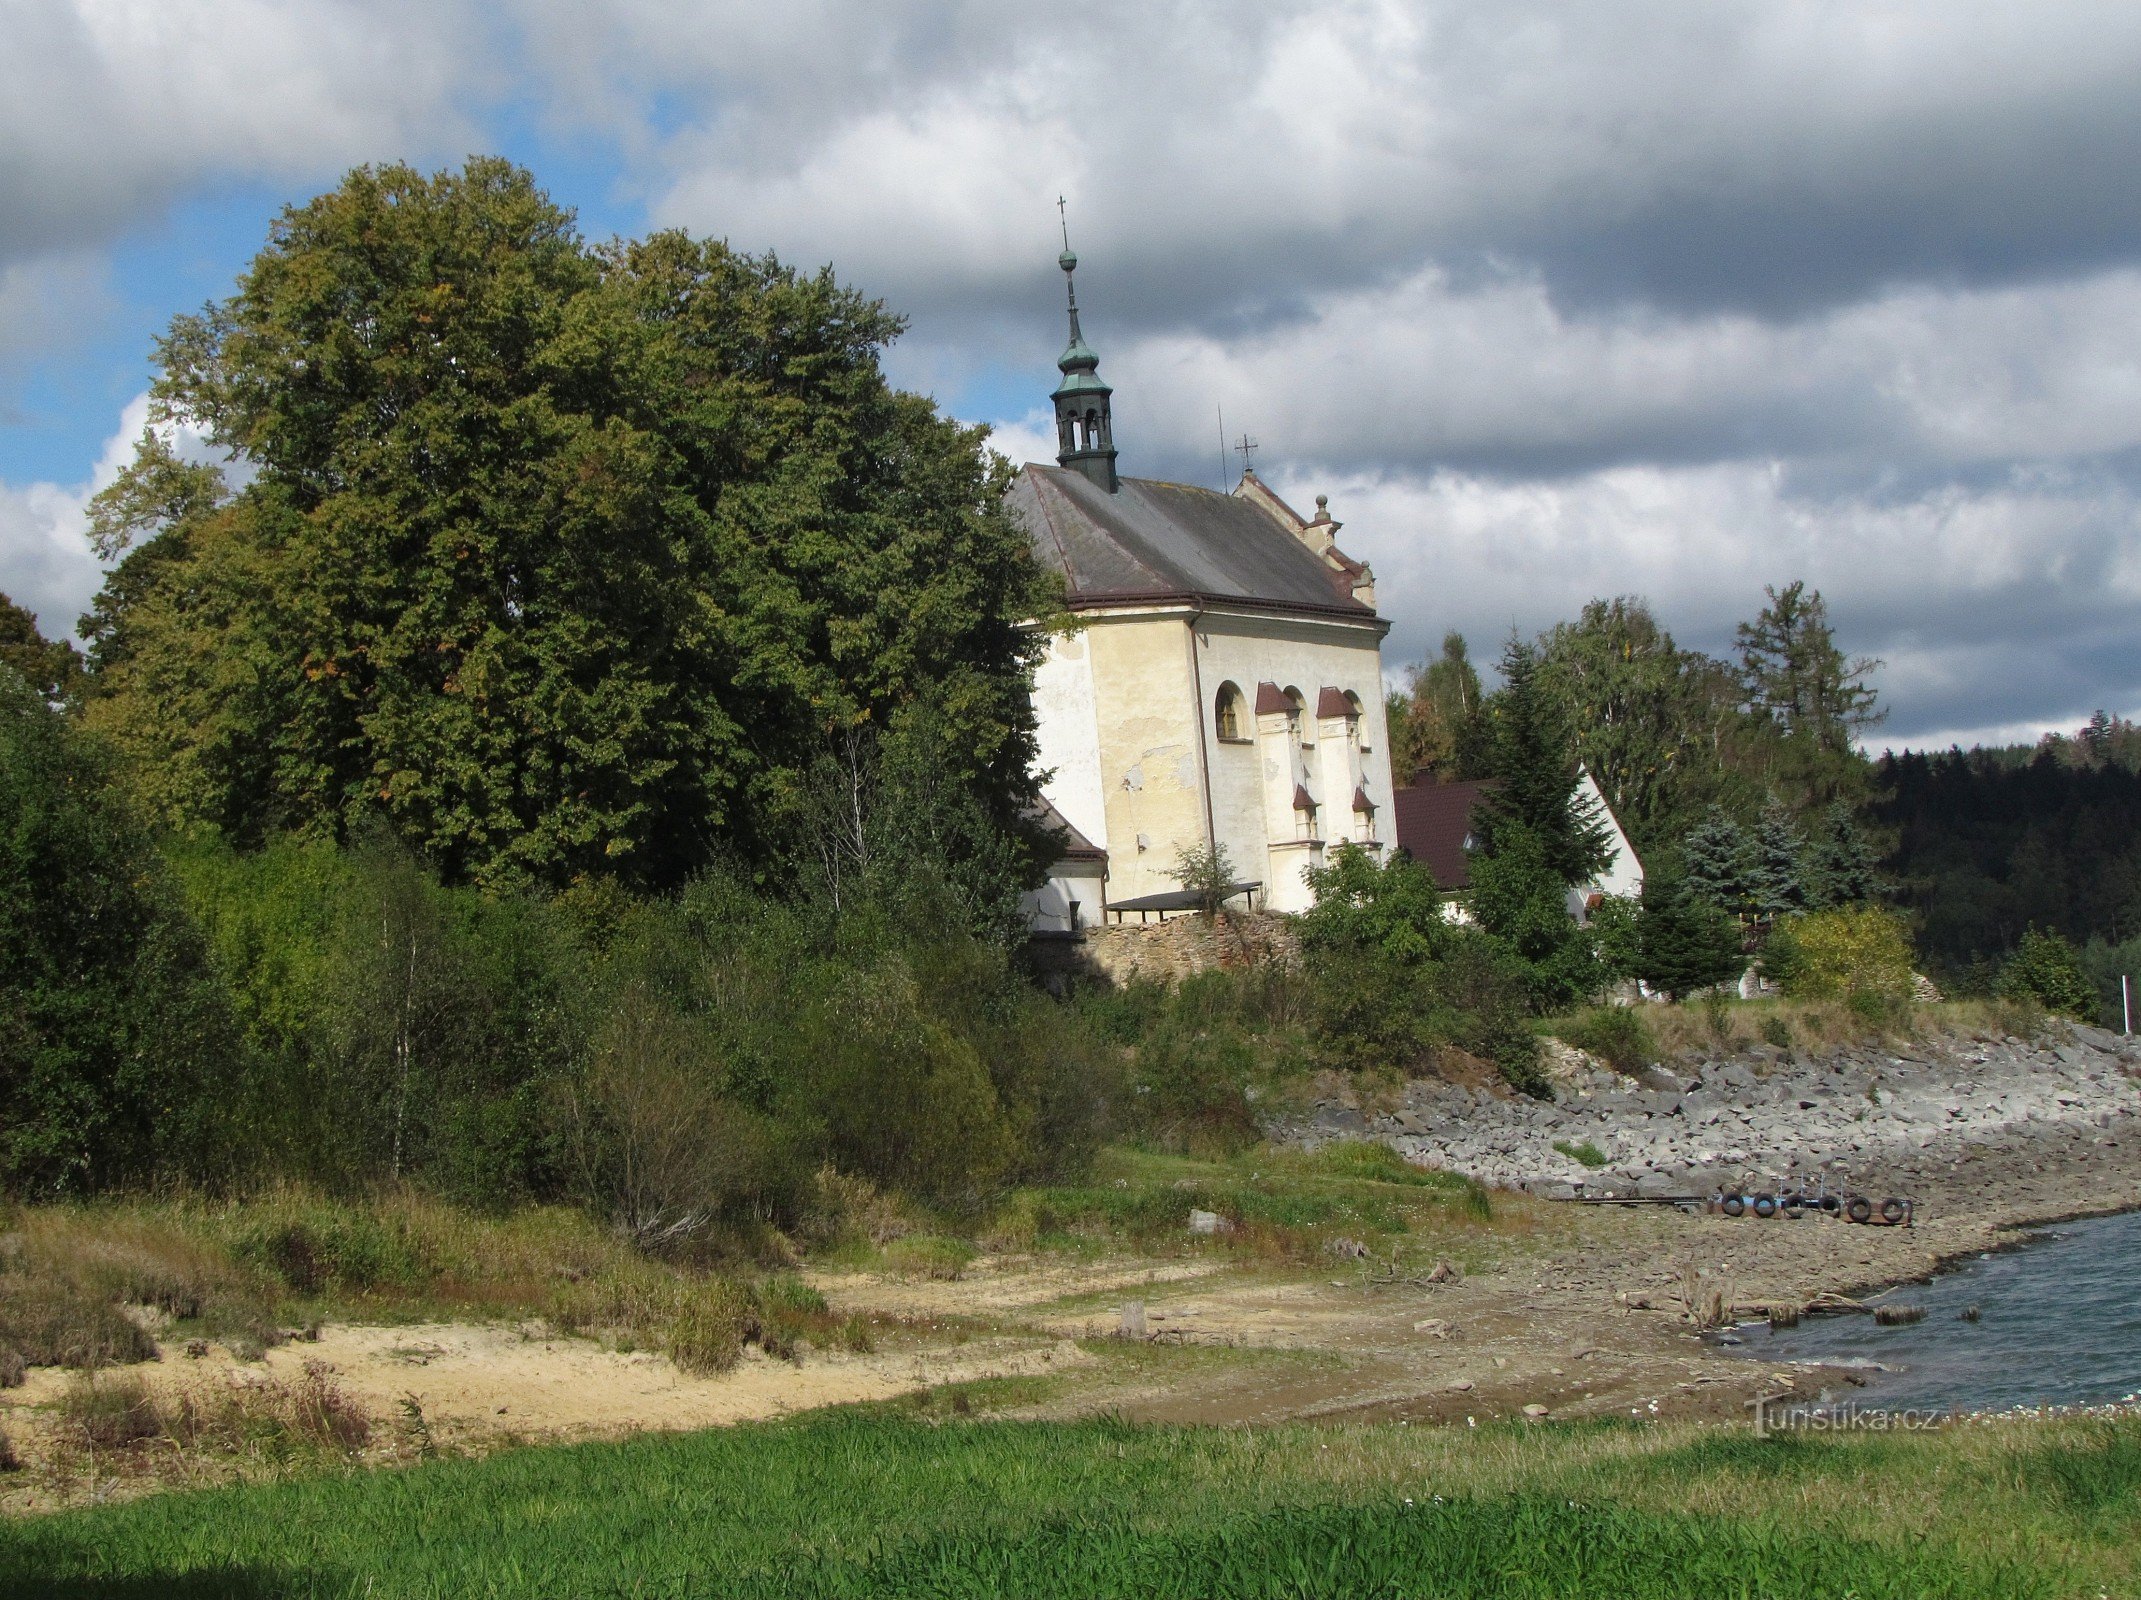 Silesian Harta - nhà thờ thánh John of Nepomuk